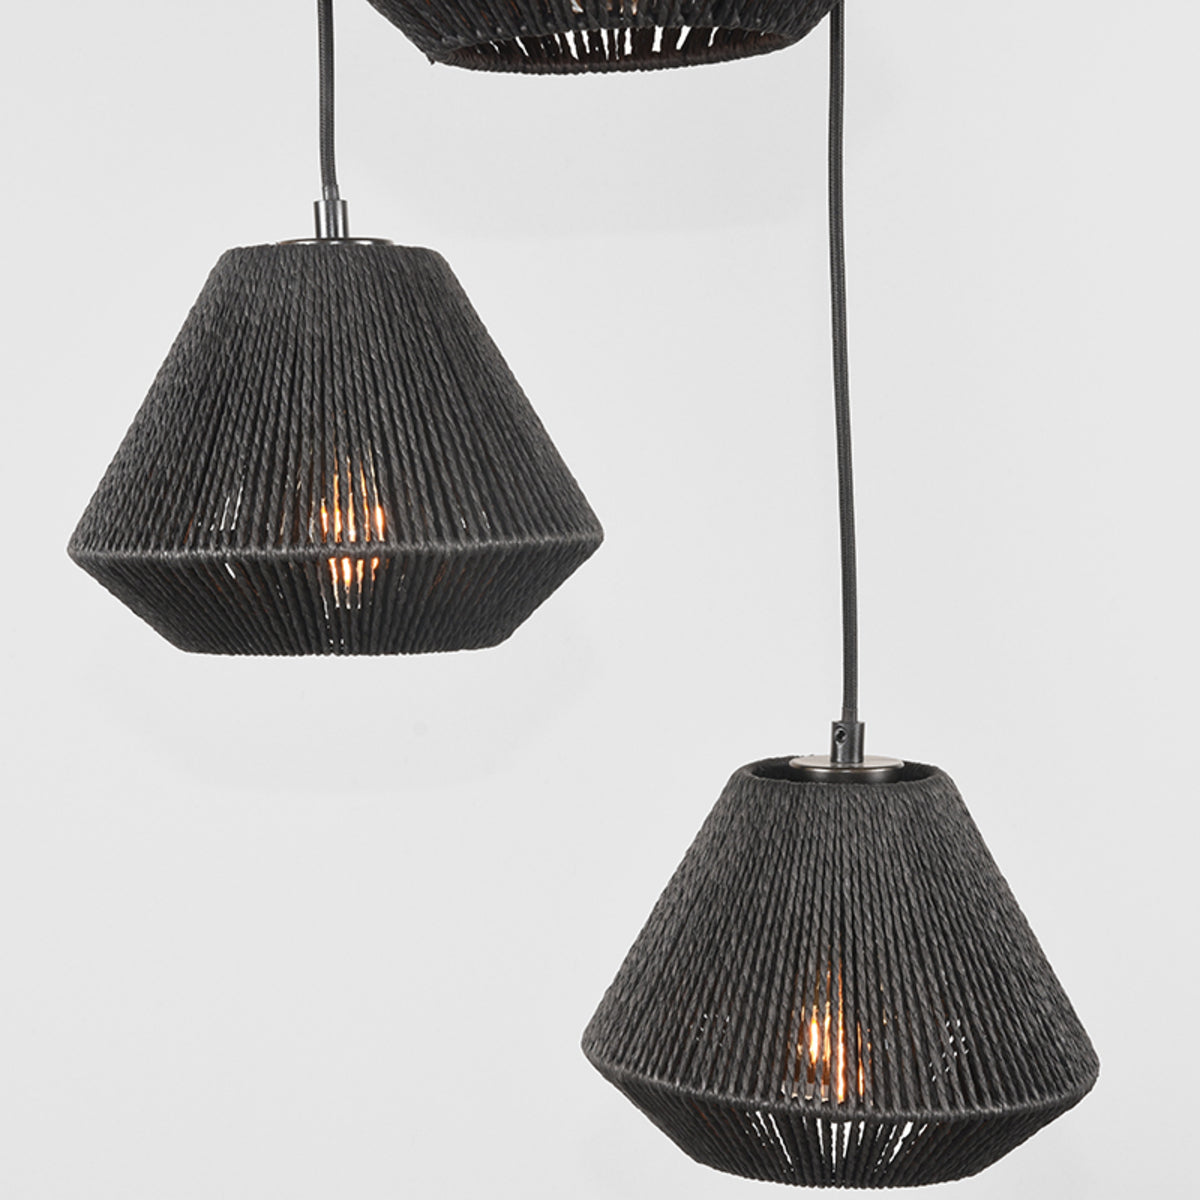 LABEL51 Hanging lamp Ibiza - Black - Jute - 3-Light